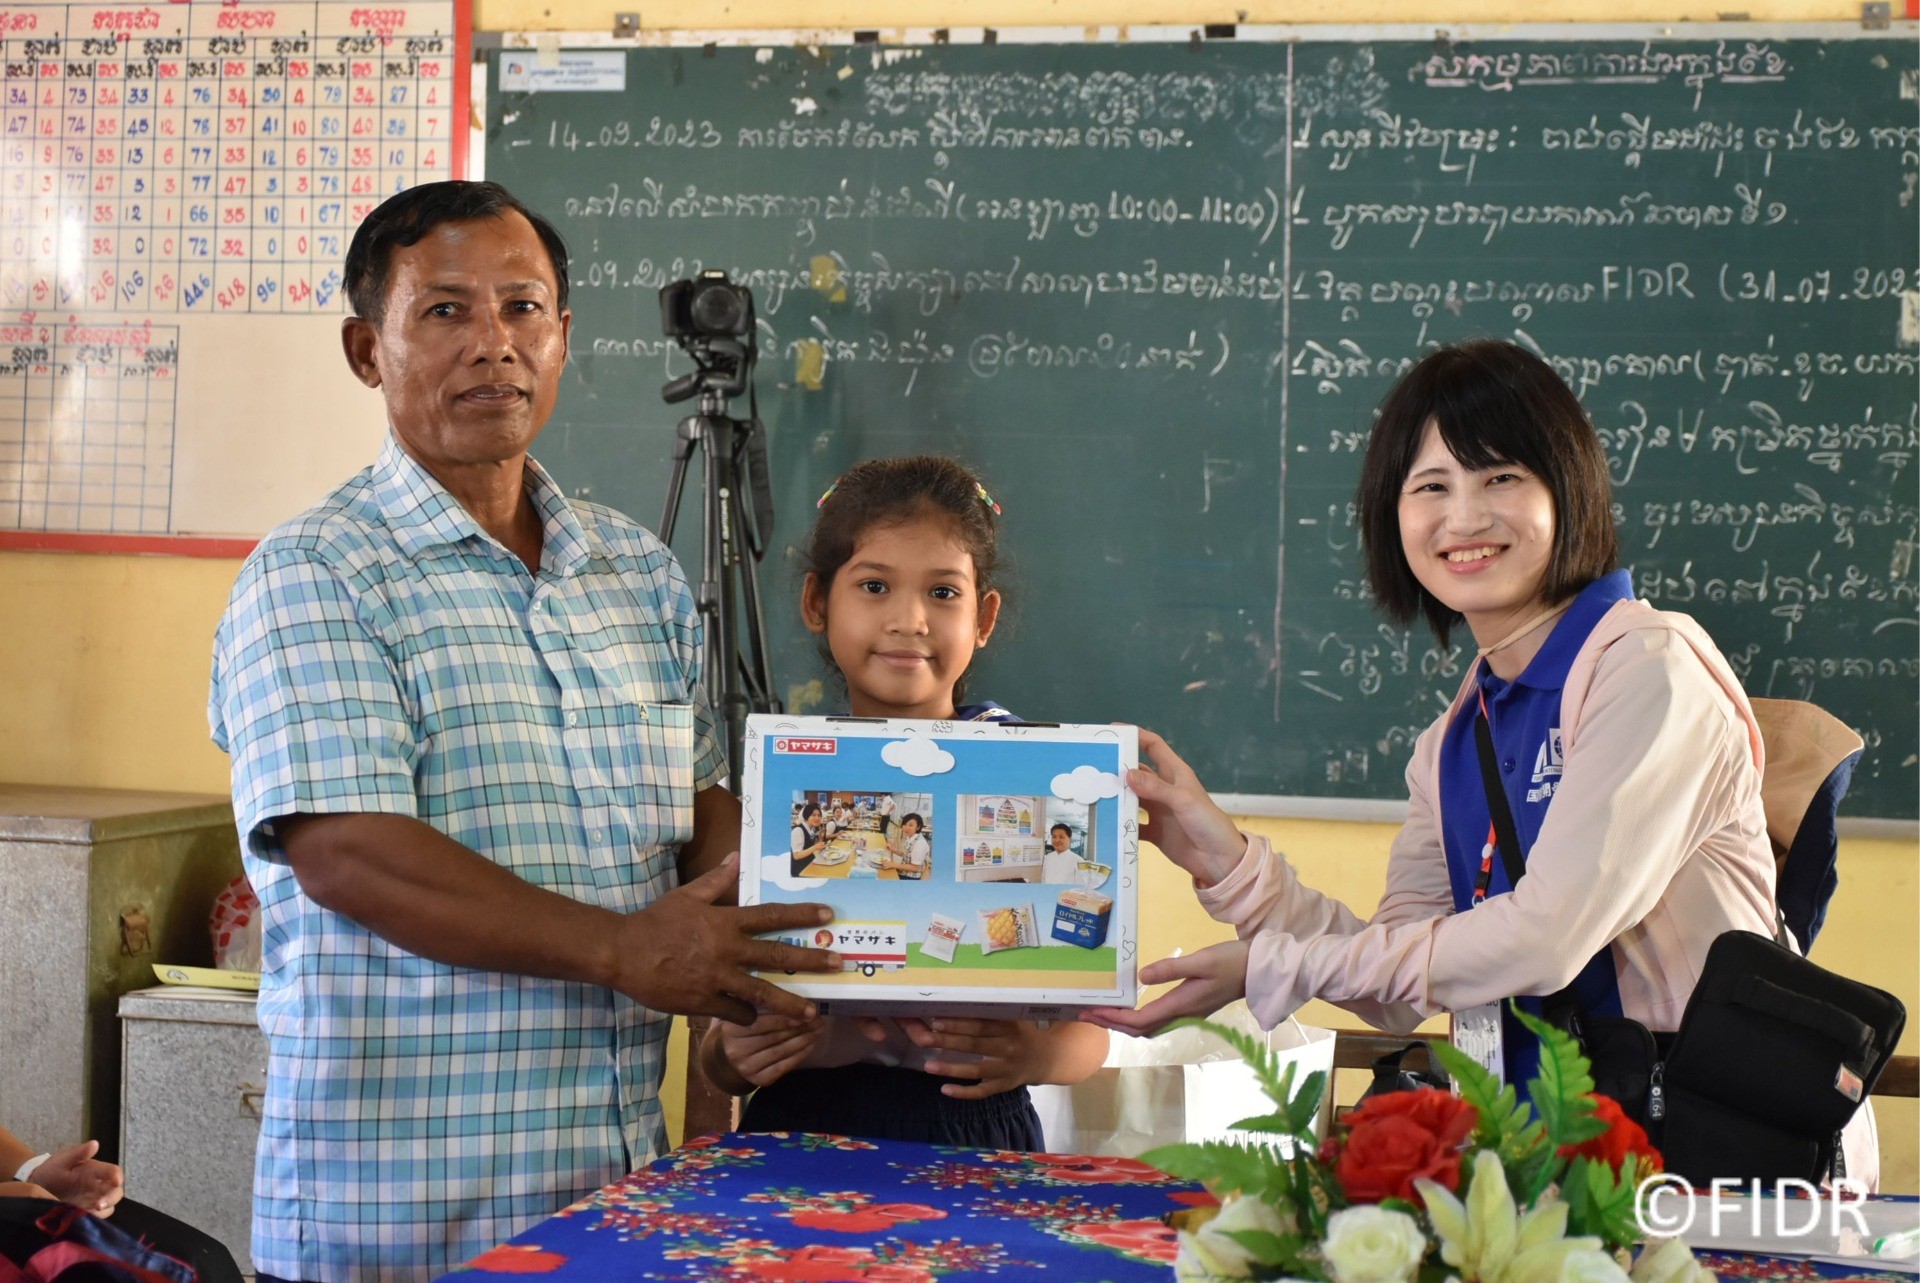 カンボジアの学校へ 支援者の皆様のメッセージを届けました